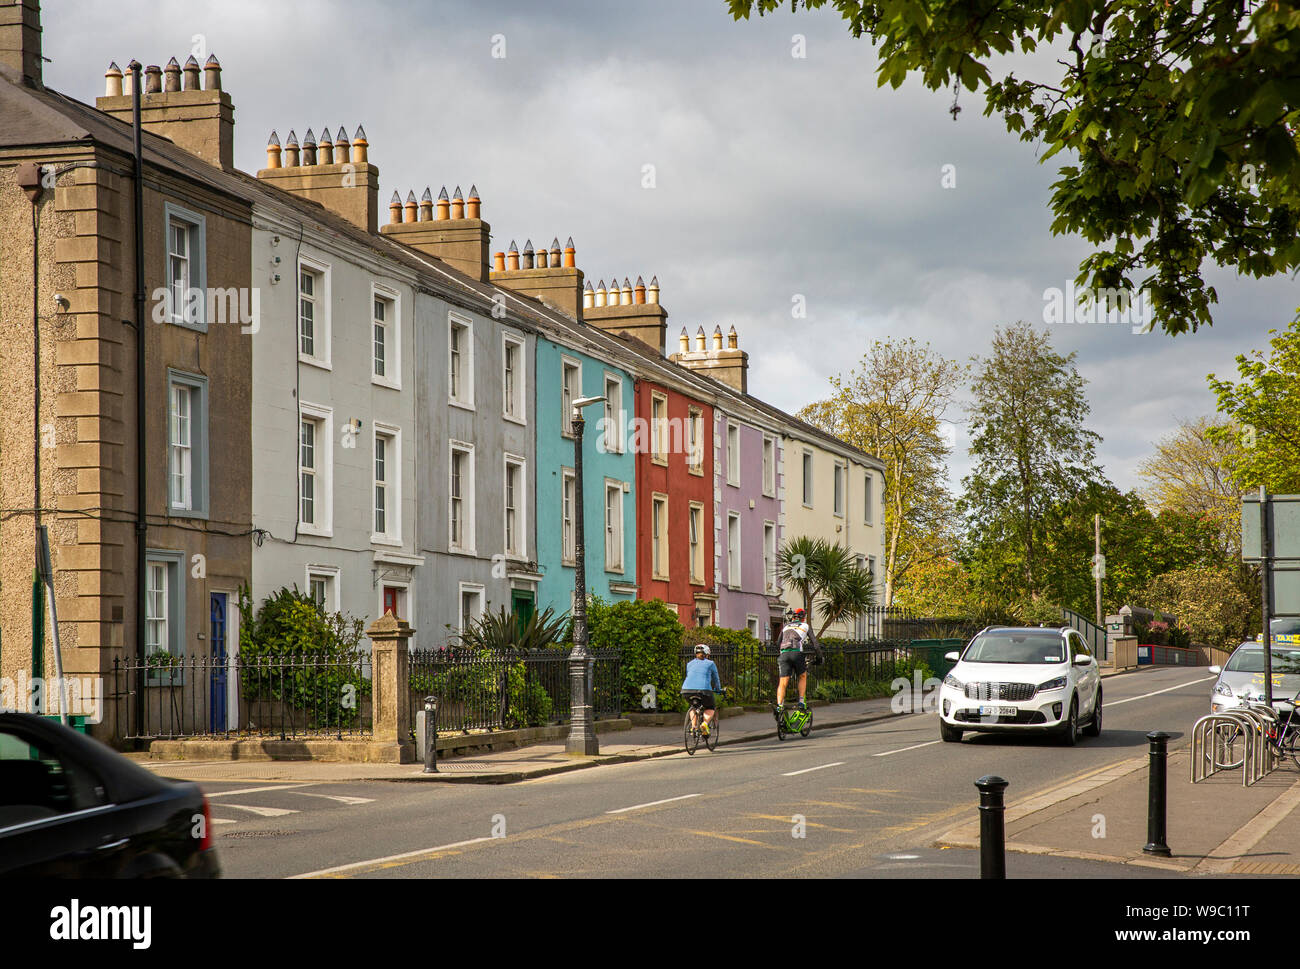 Irlanda, Co Dublin, Malahide, Dublin Road, ciclisti passando terrazza del dipinto in maniera colorata case in stile georgiano Foto Stock